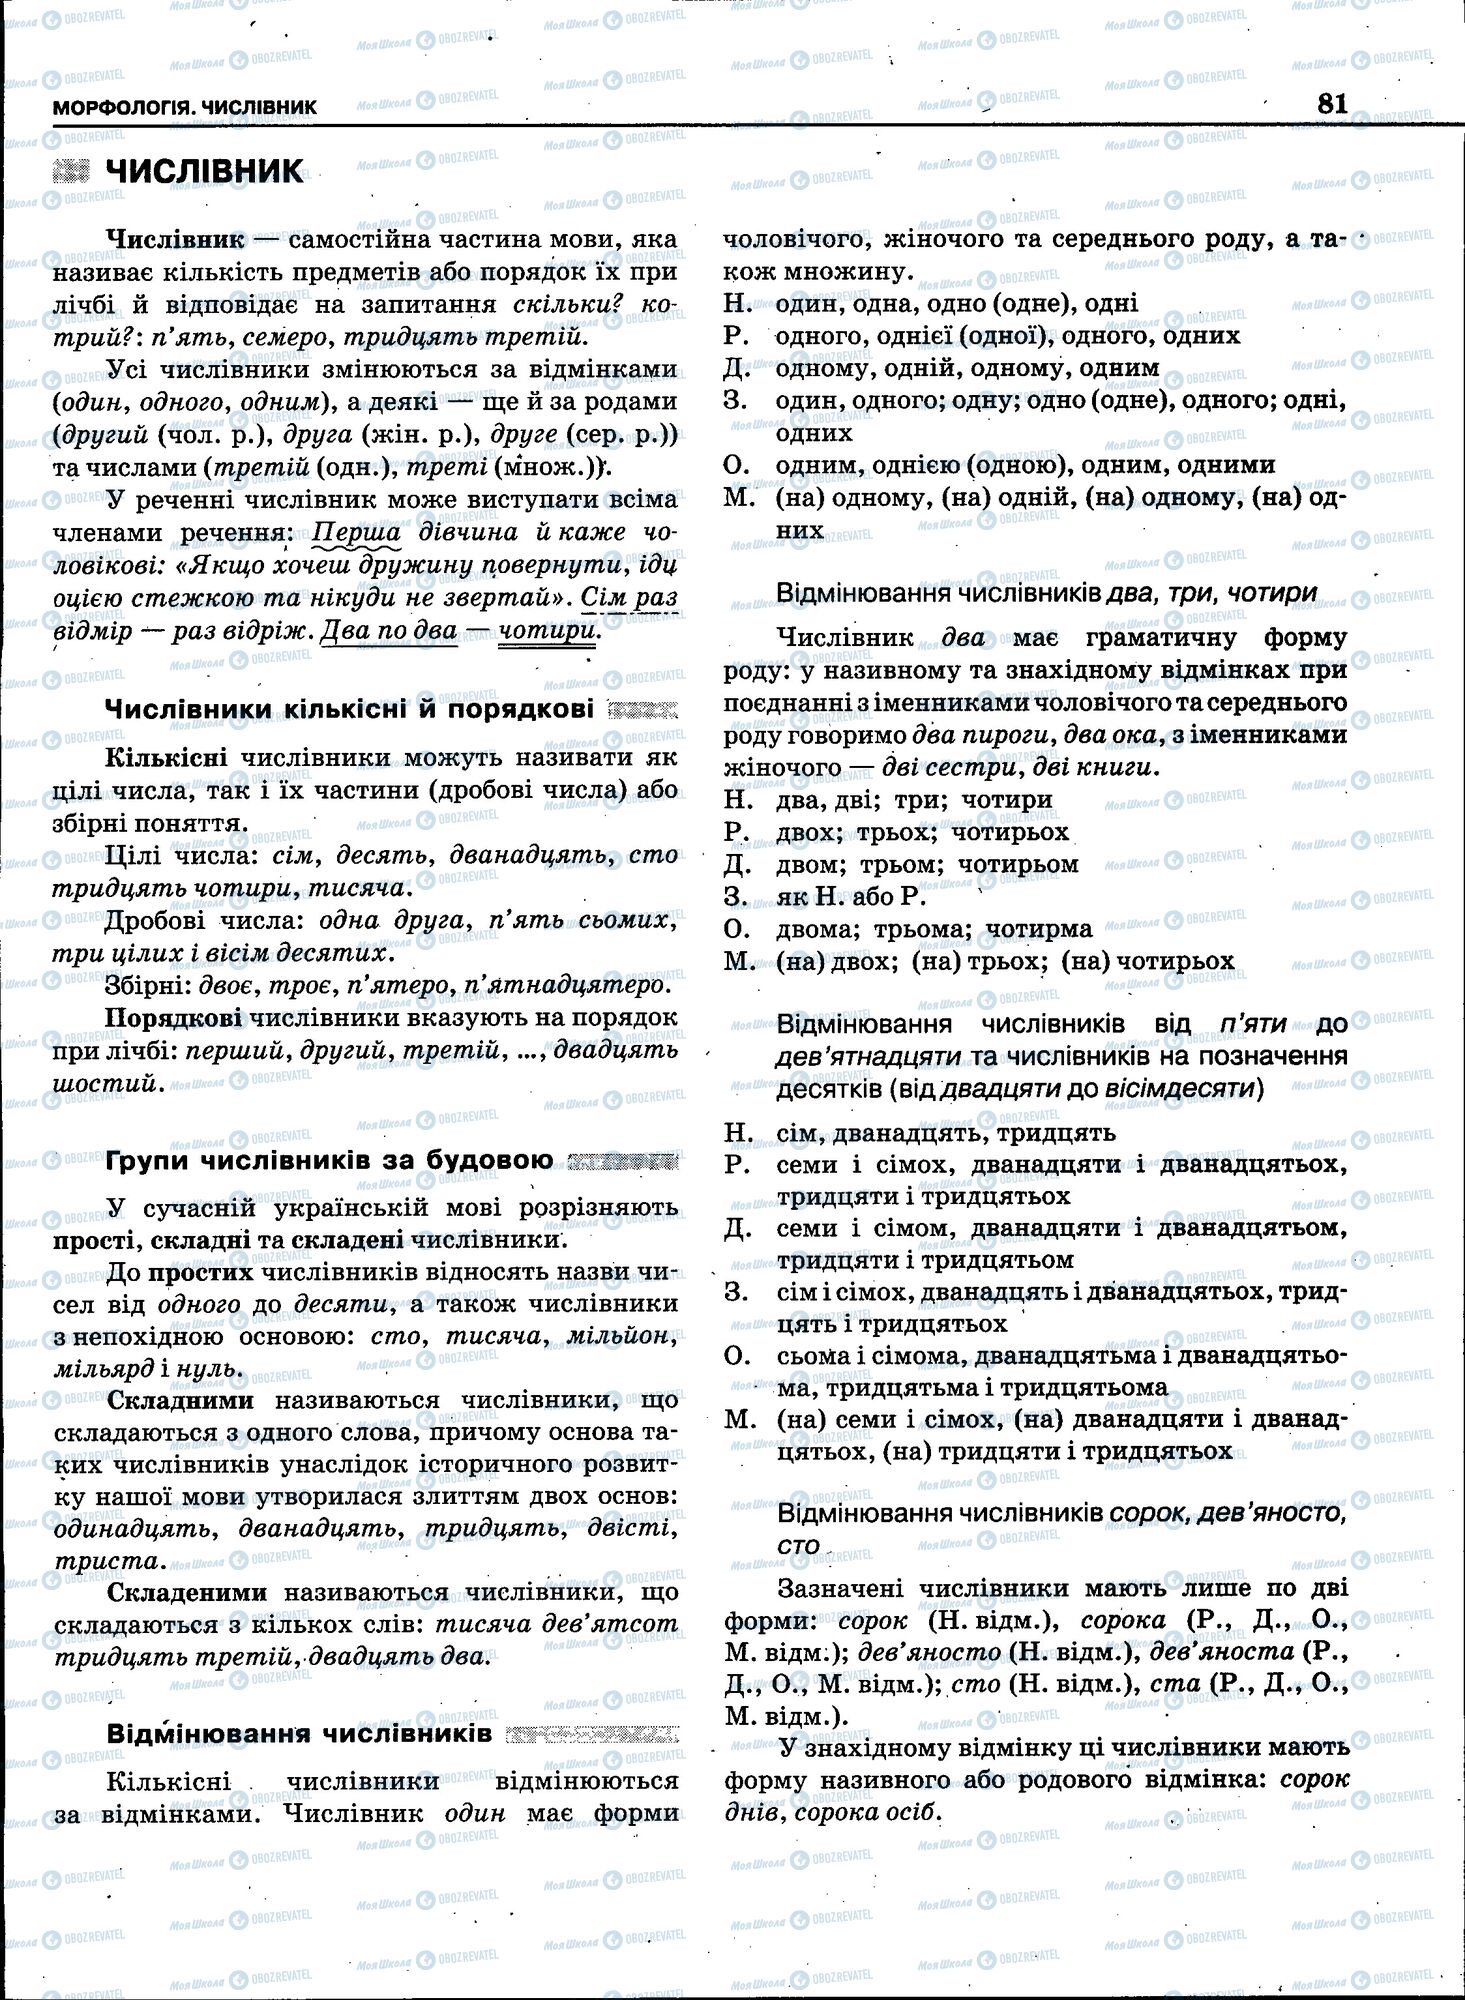 ЗНО Укр мова 11 класс страница 079